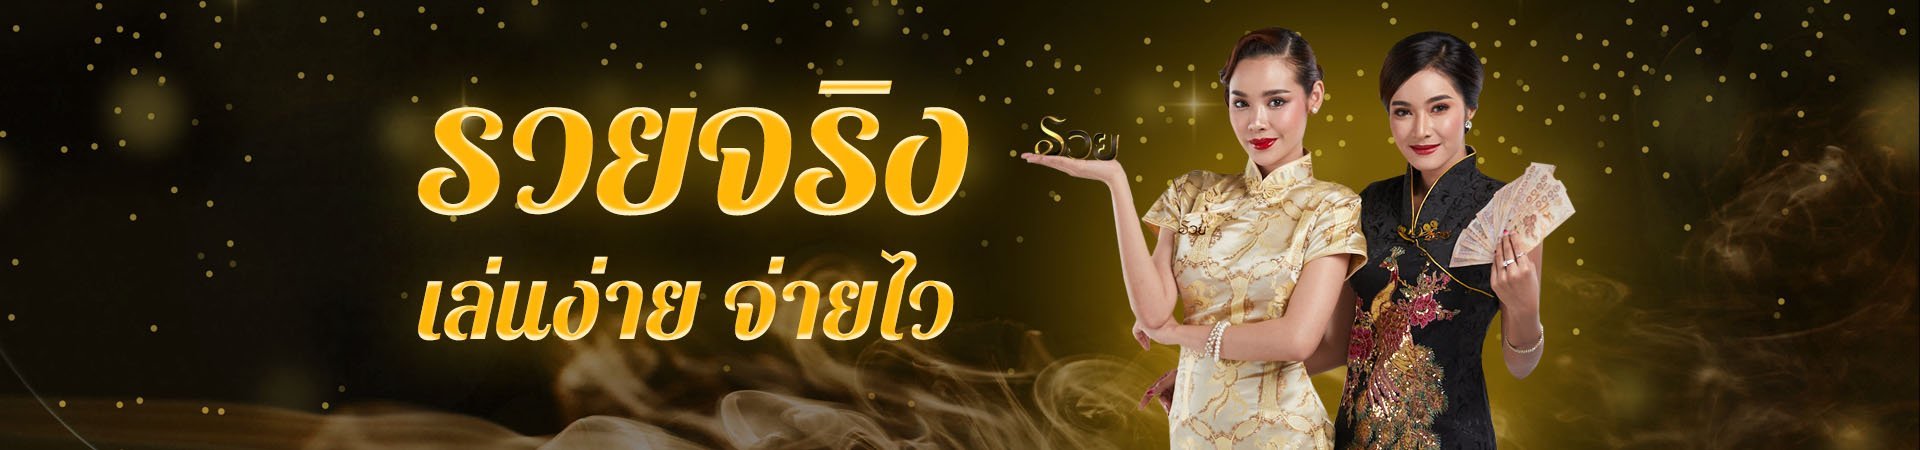 เว็บบริการหวยพร้อมแนะนำเลขเด็ดหวยไทยแจกฟรี